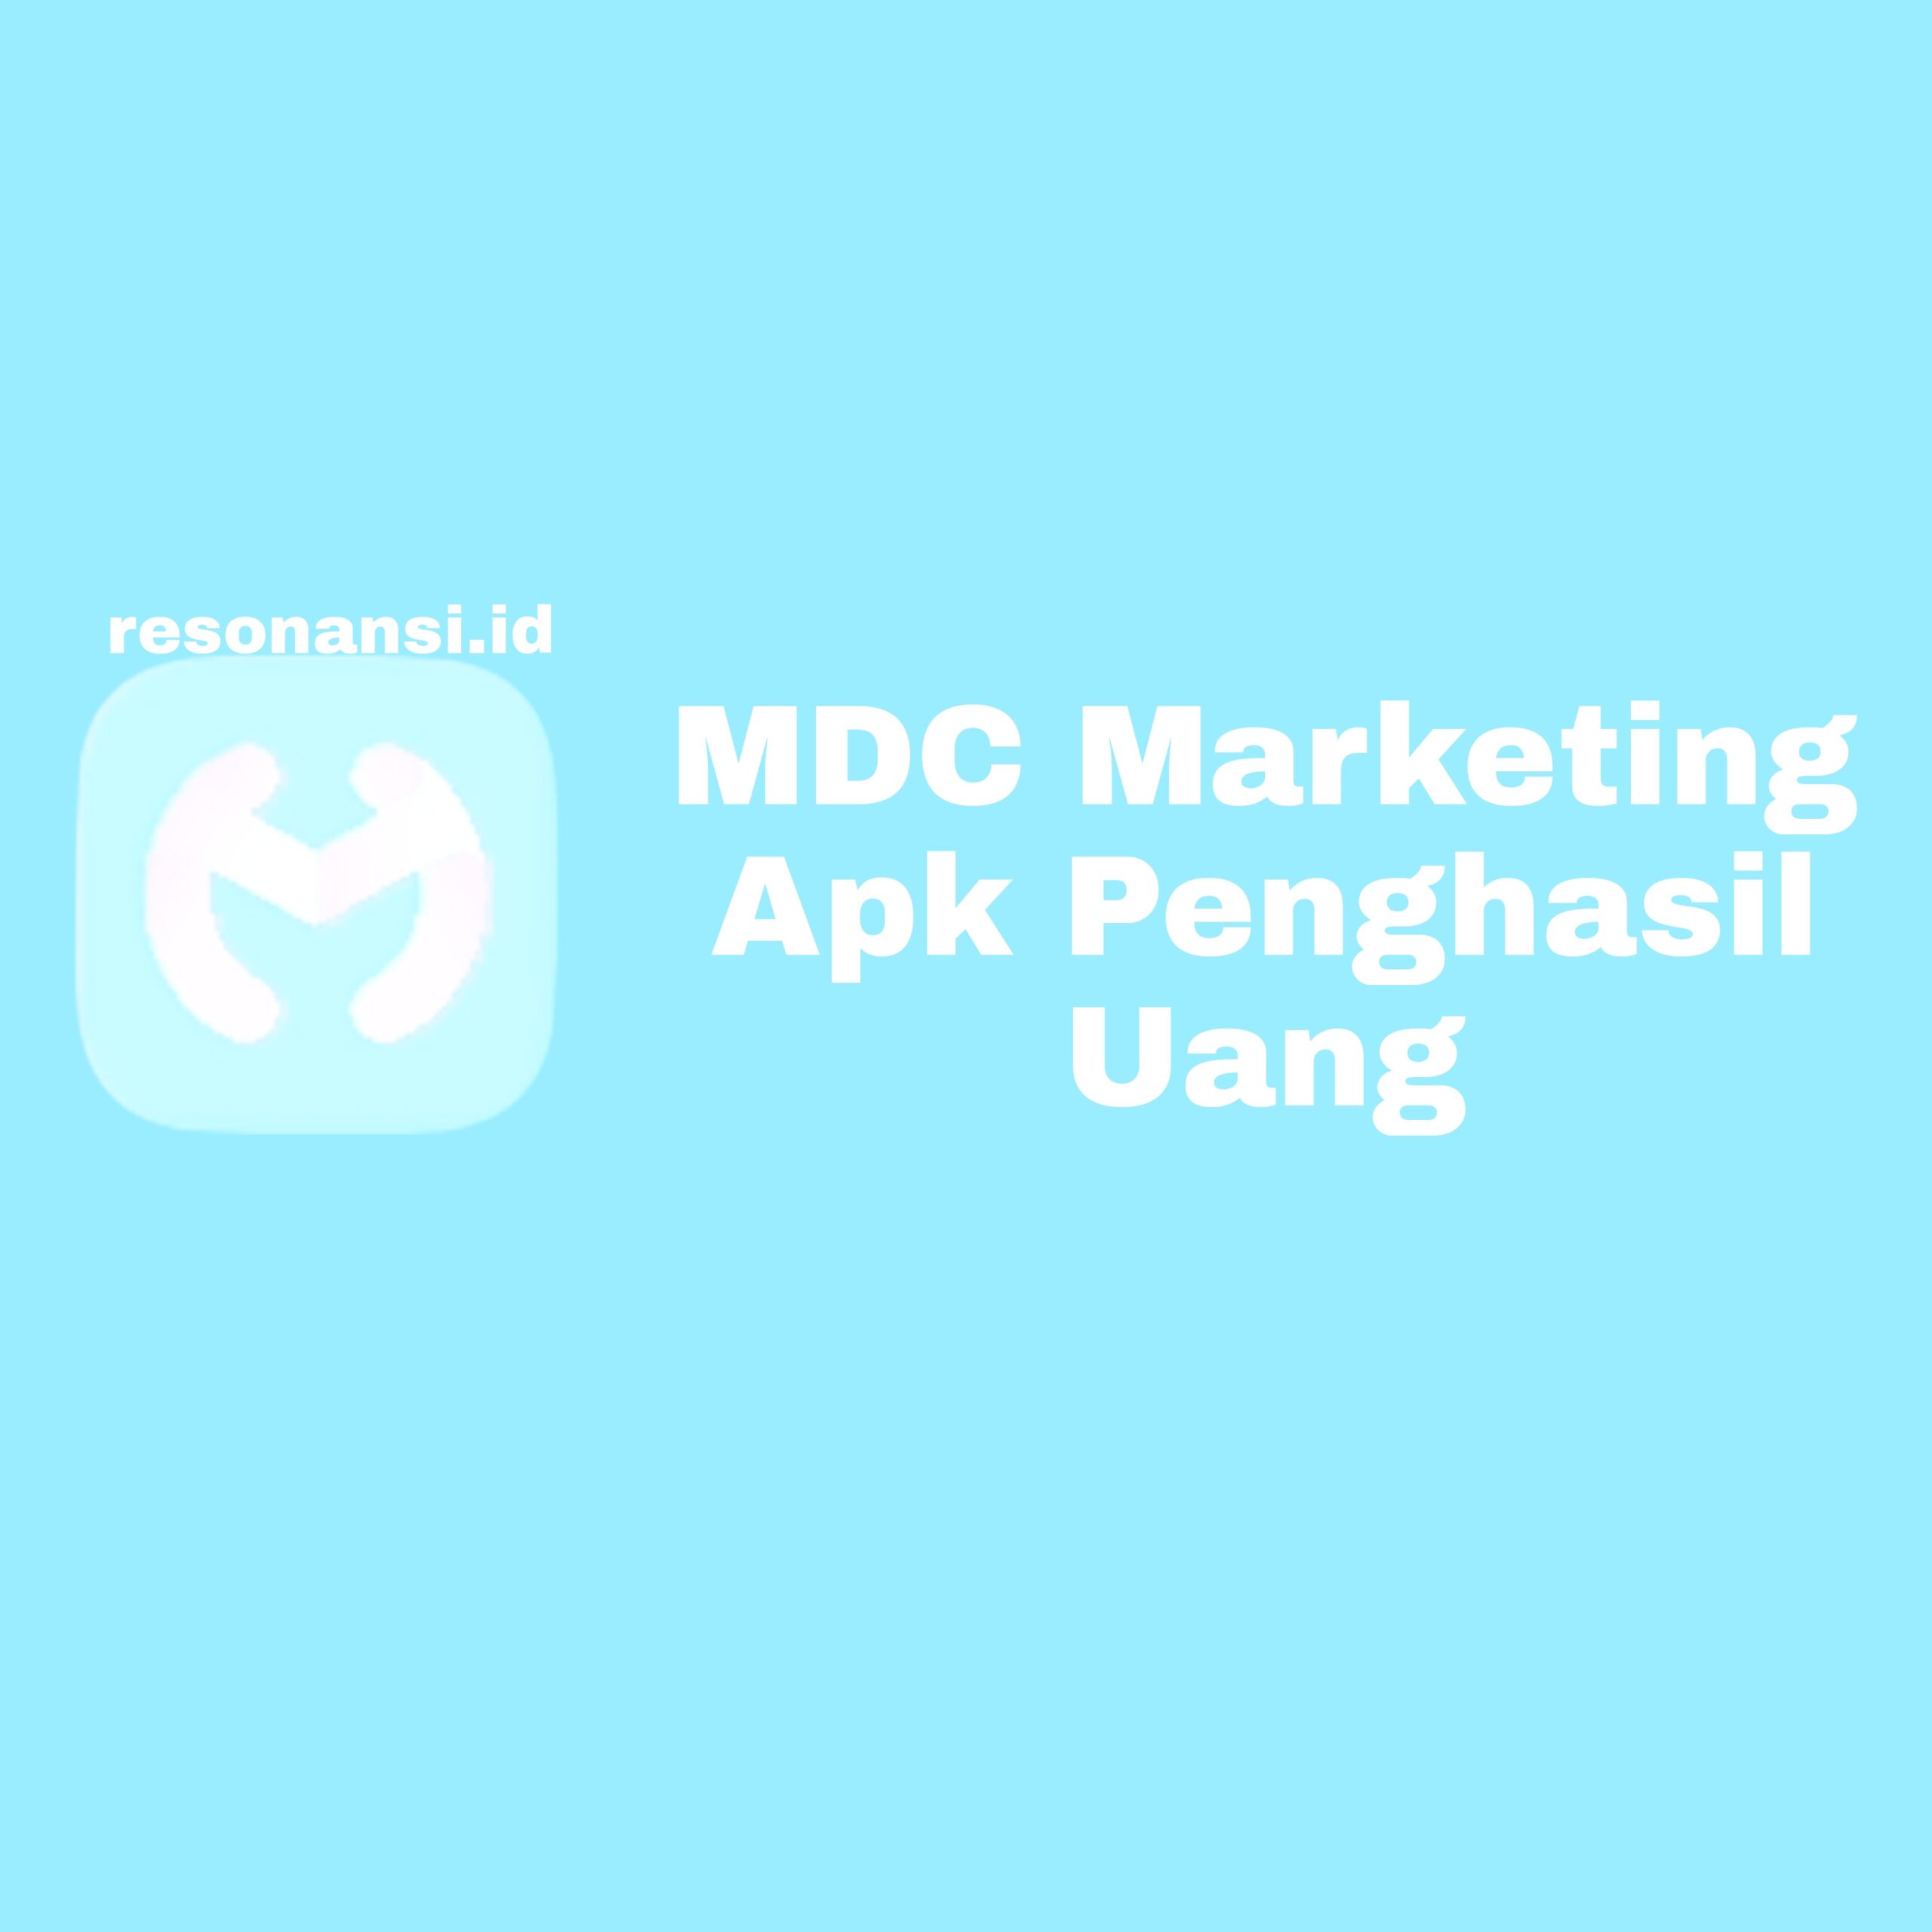 MDC Marketing Apk Penghasil Uang